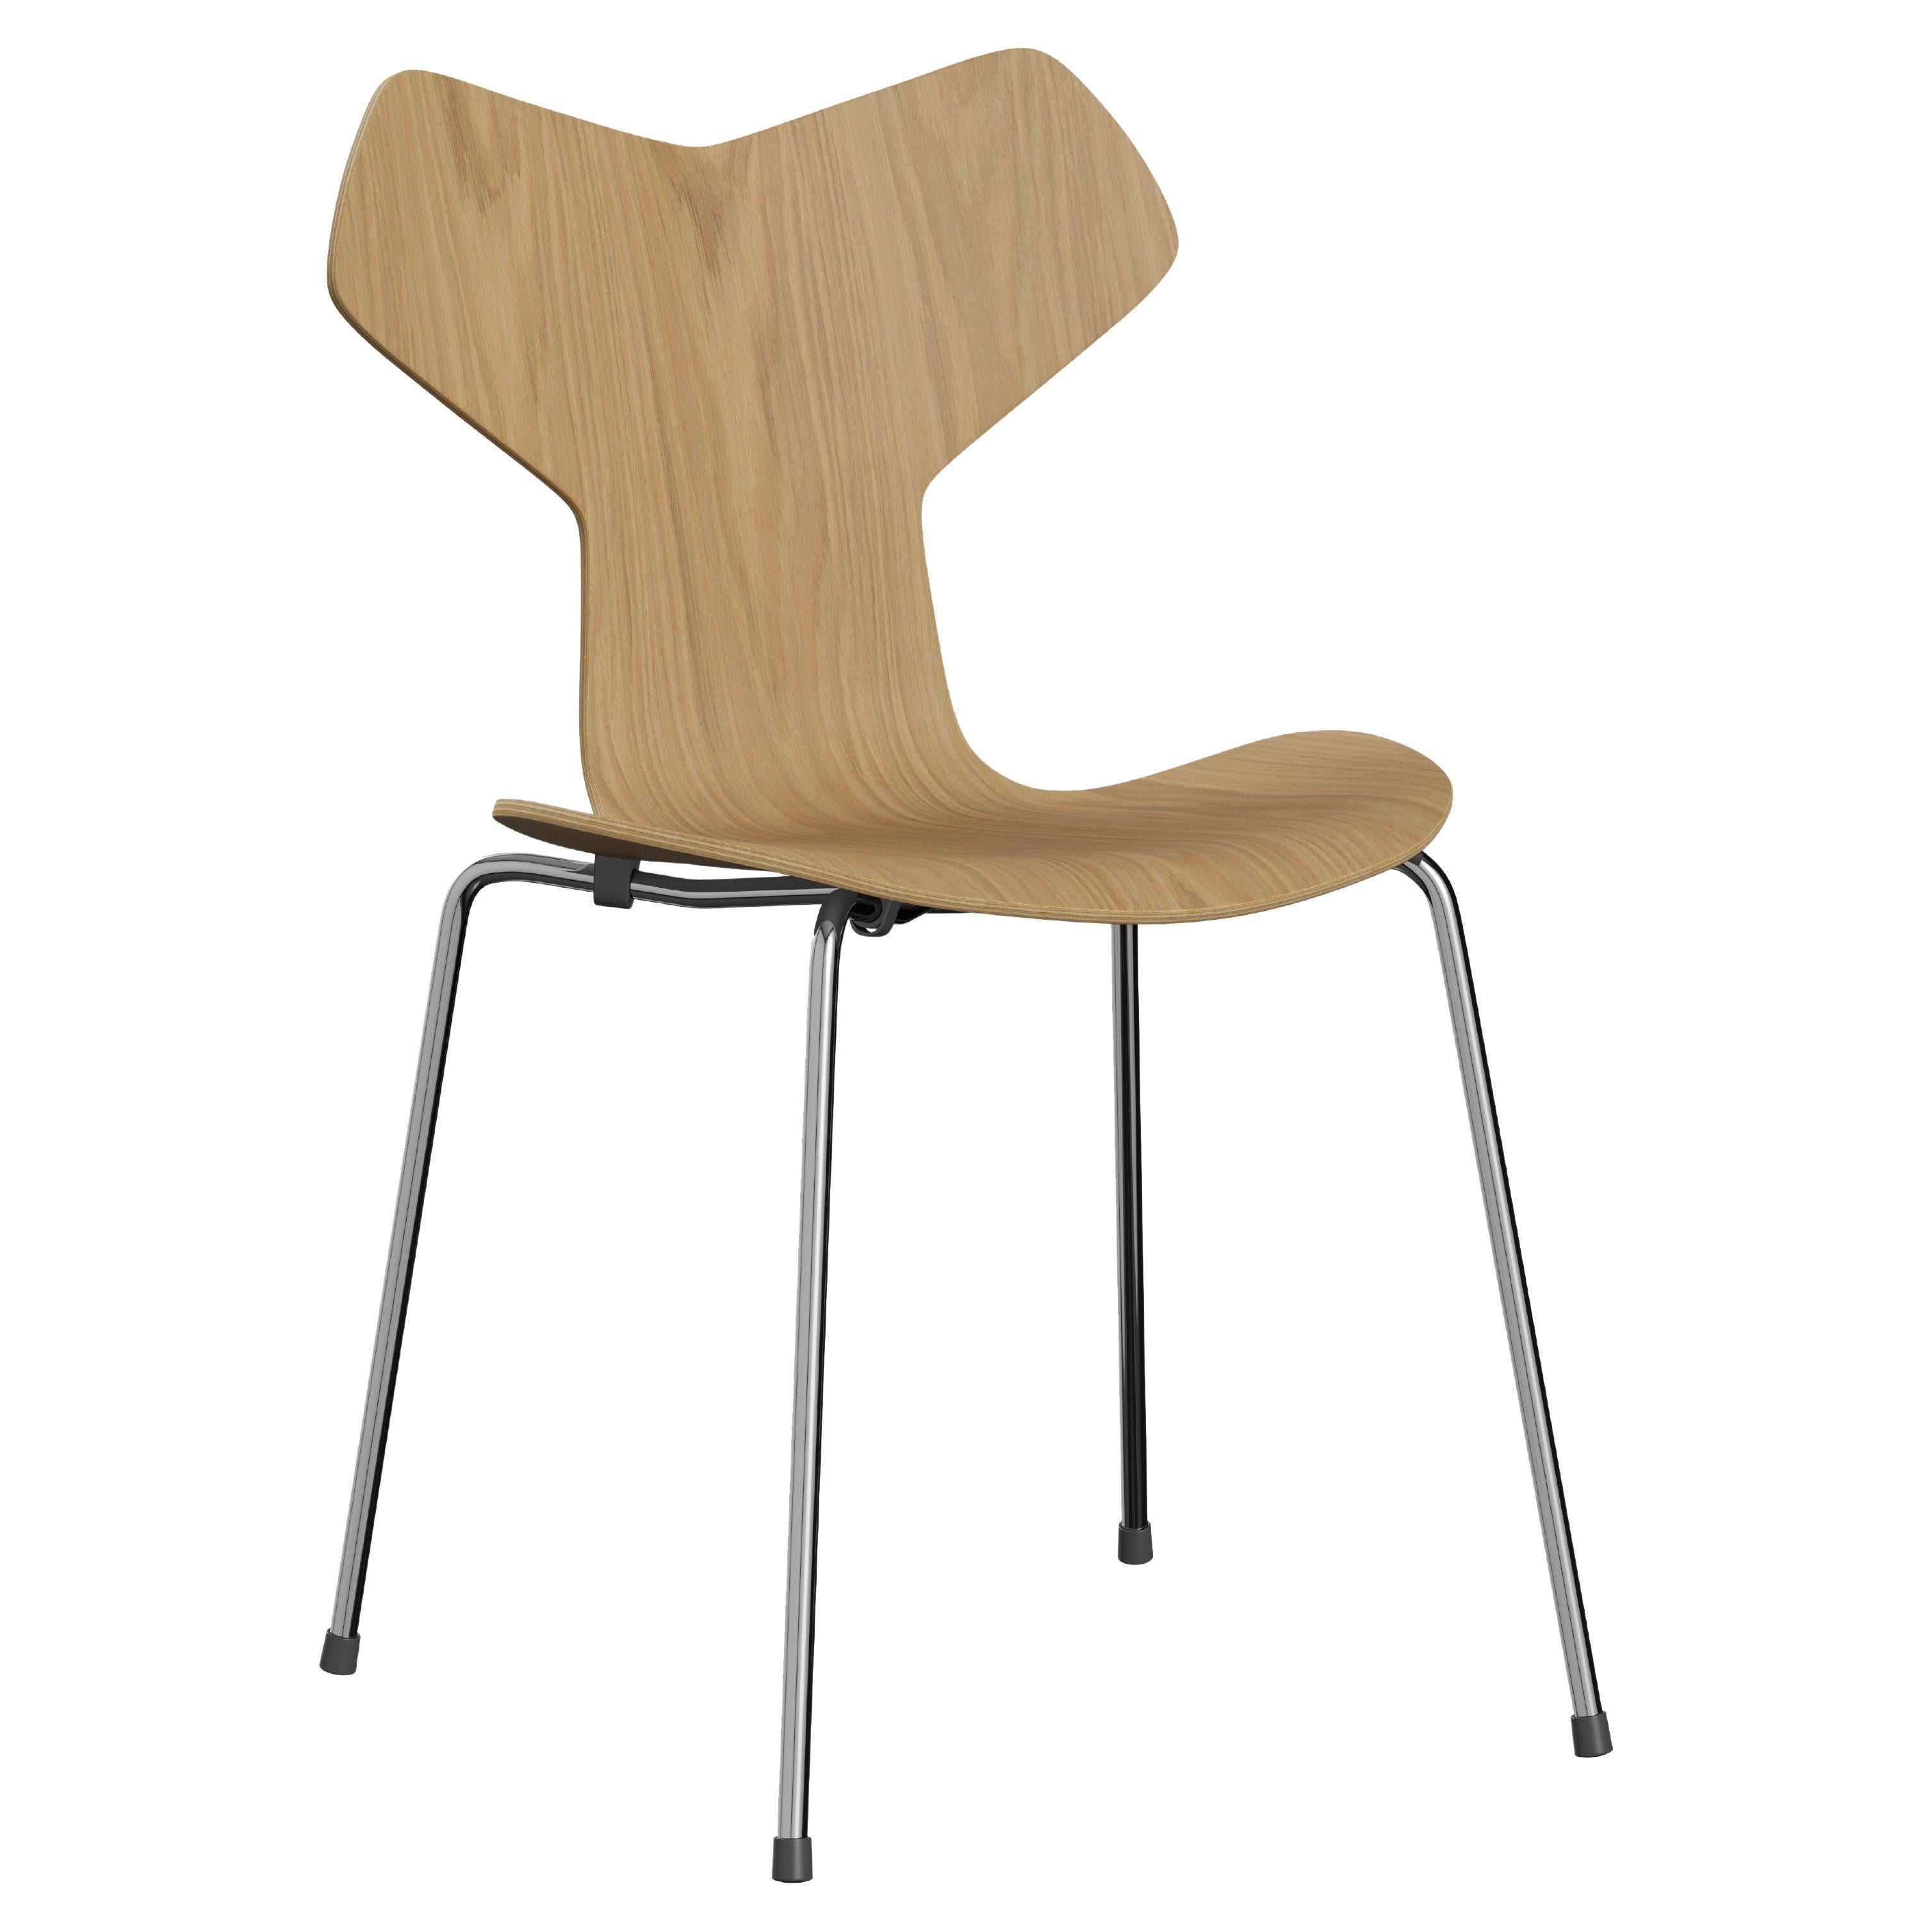 Arne Jacobsen 'Grand Prix' Stuhl für Fritz Hansen, Stuhl mit klar lackiertem Furnier